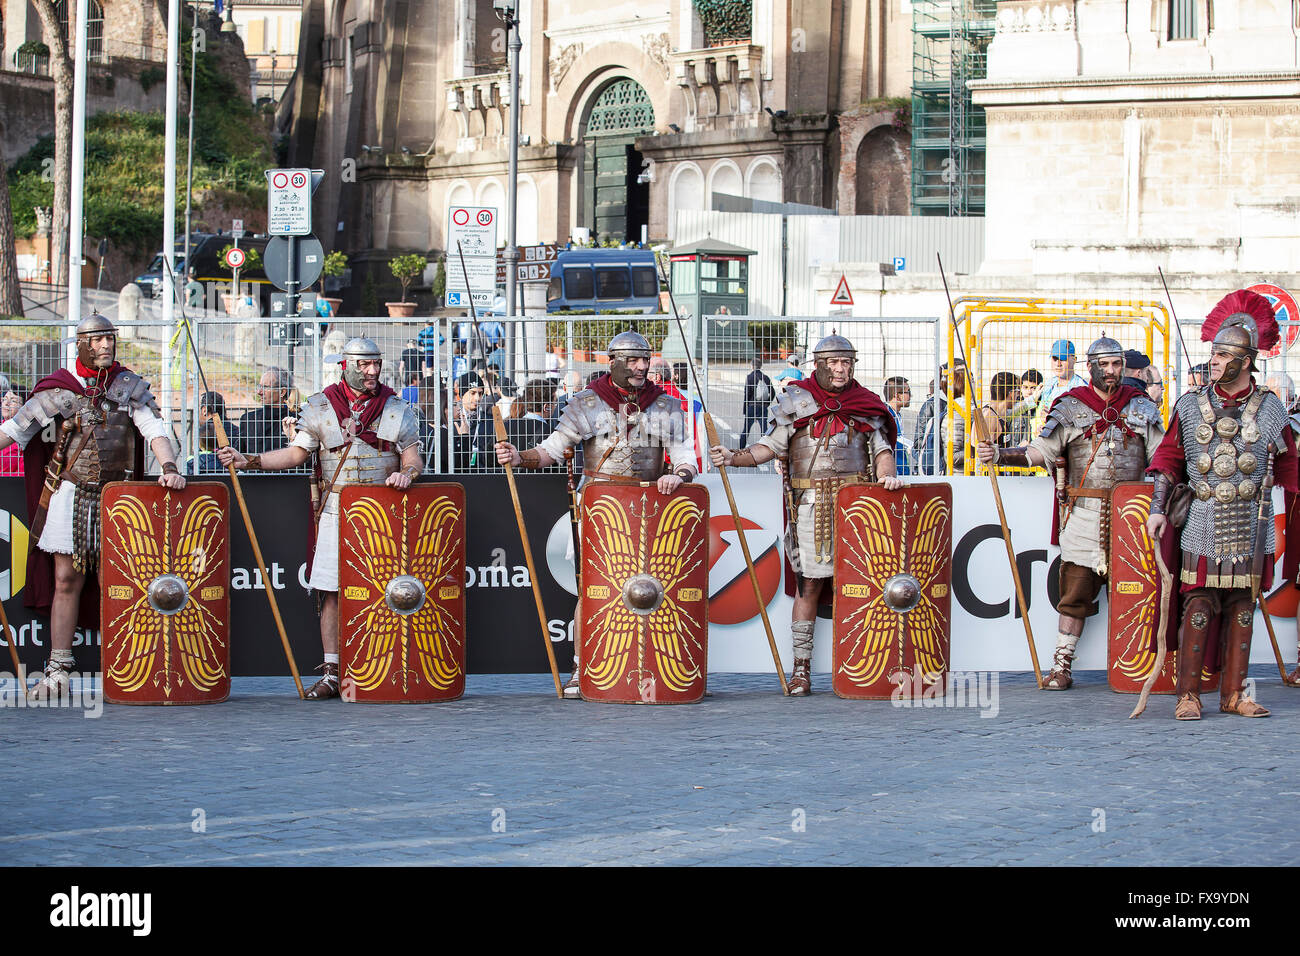 Gladiators in line. Rome, Italy - April 10, 2016: Gladiators in line at the Rome Marathon in 2016. Stock Photo